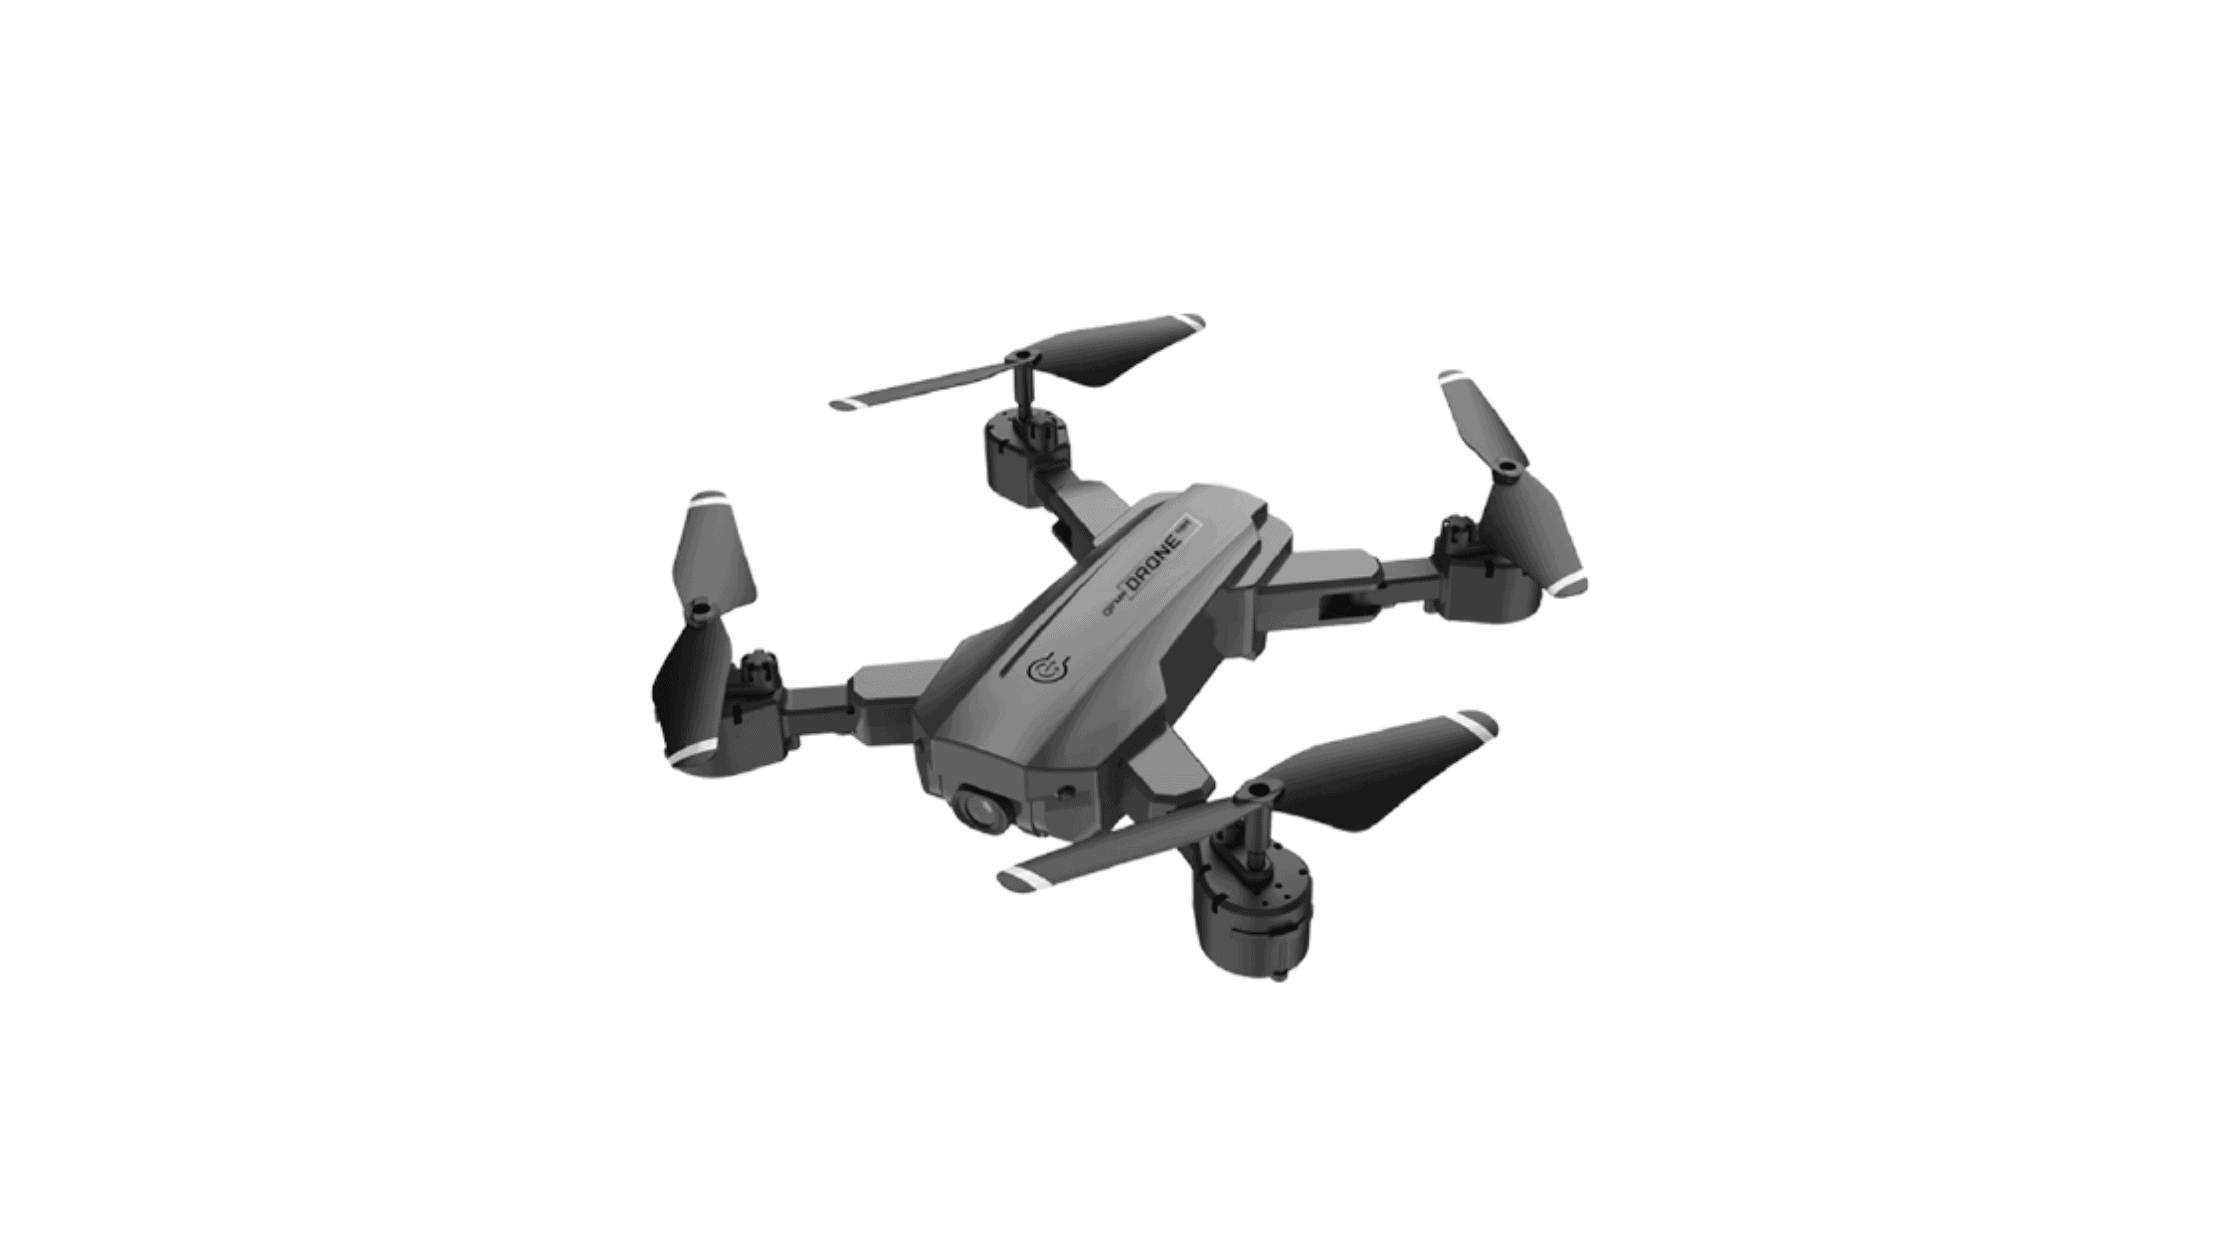 Qinux Drone 4K Reviews